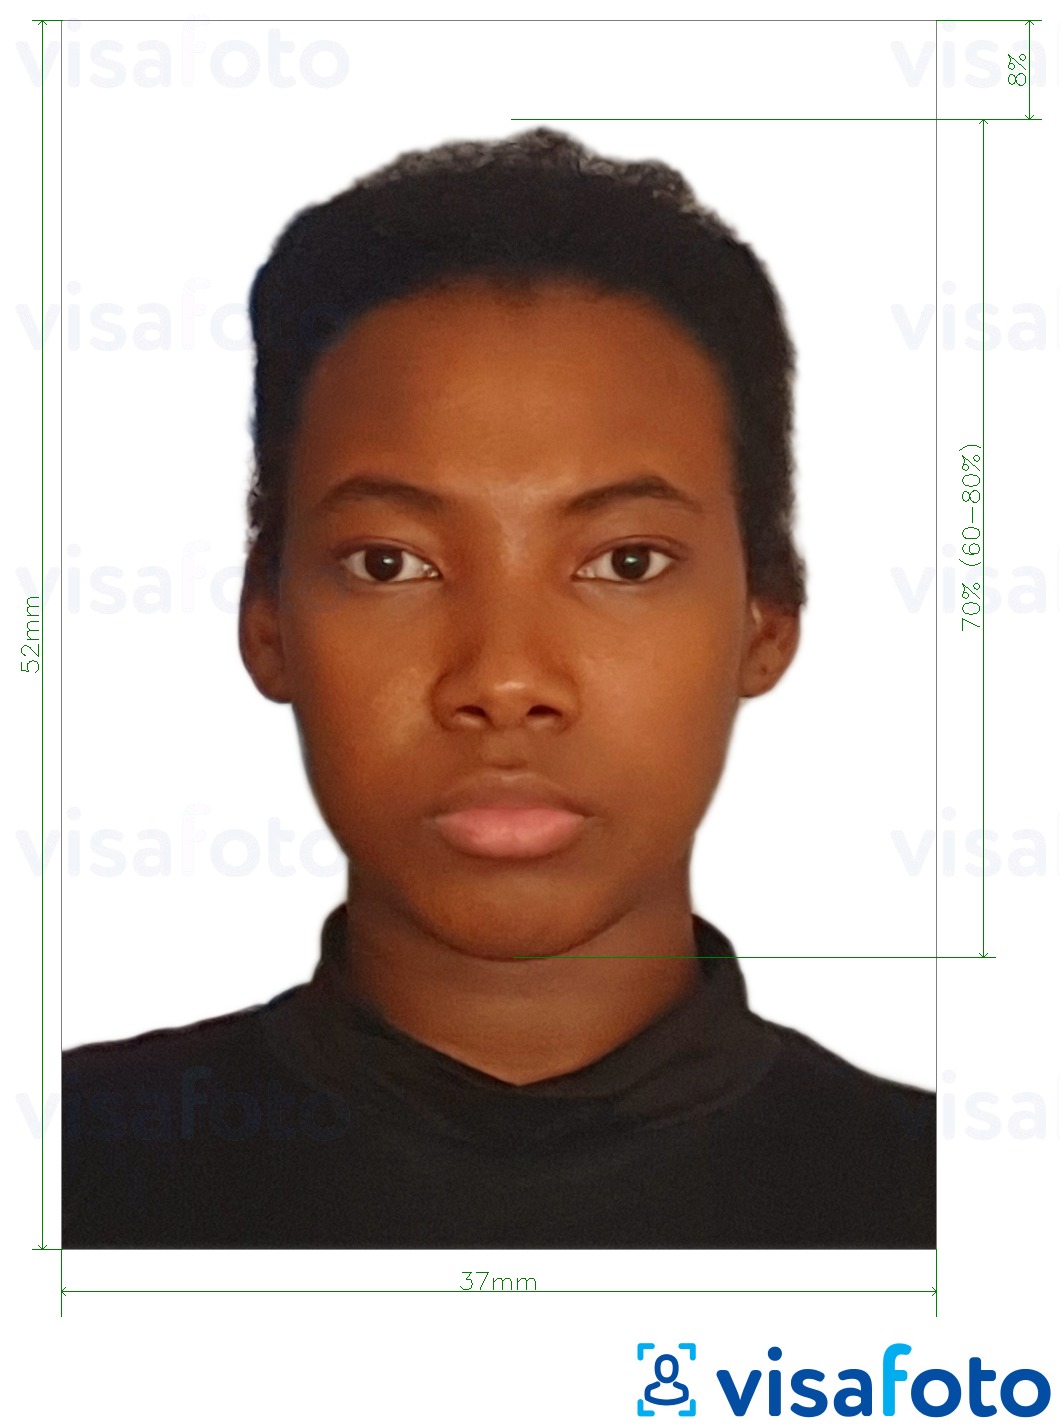 Contoh dari foto untuk Paspor Namibia 37x52mm (3.7x5.2 cm) dengan ukuran spesifikasi yang tepat